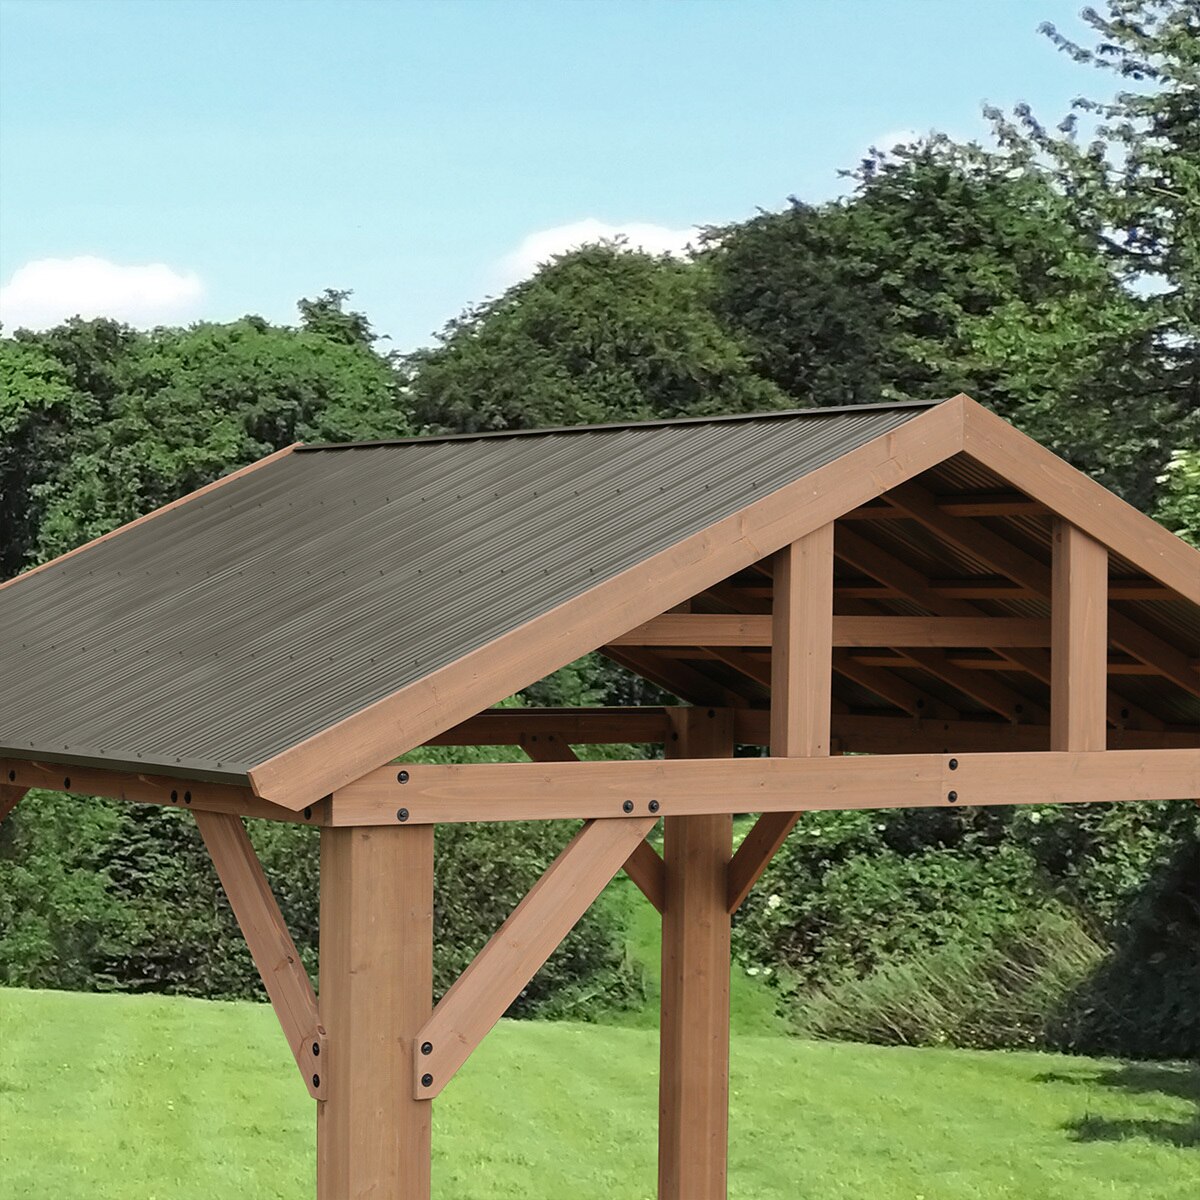 Yardistry pérgola de madera de 4.2 m x 3.6 m con techo de aluminio